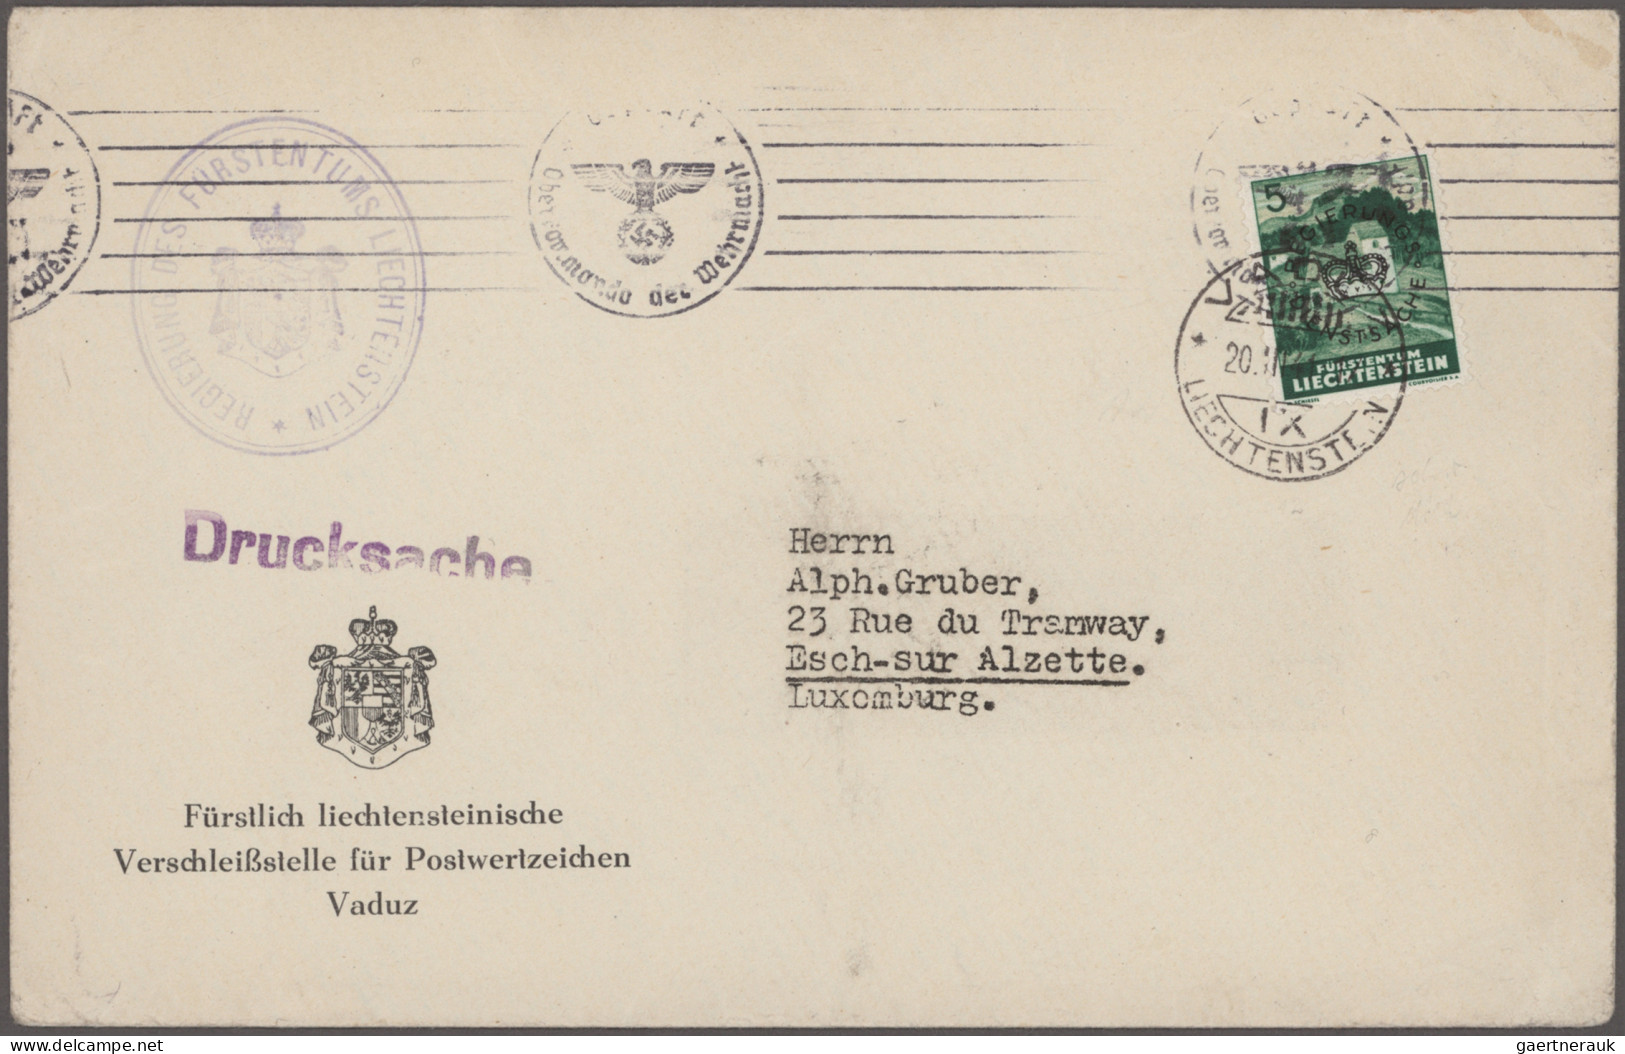 Liechtenstein - Dienstmarken: 1934/1947, umfangreiche Sammlung der 3 verschieden